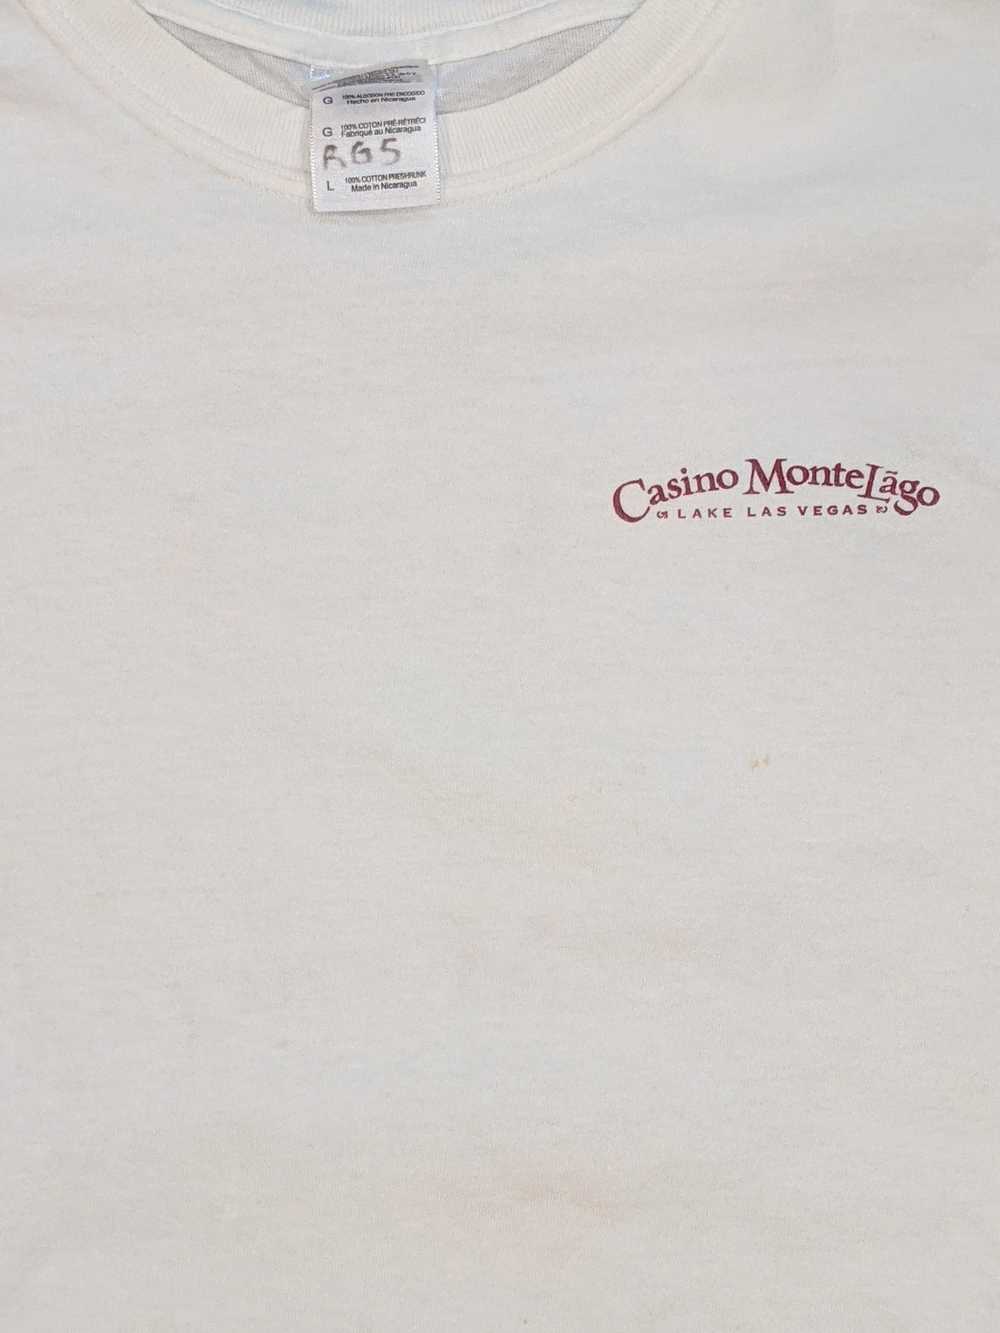 Vintage Casino Monte Lago Lake Las Vegas t-shirt - image 4